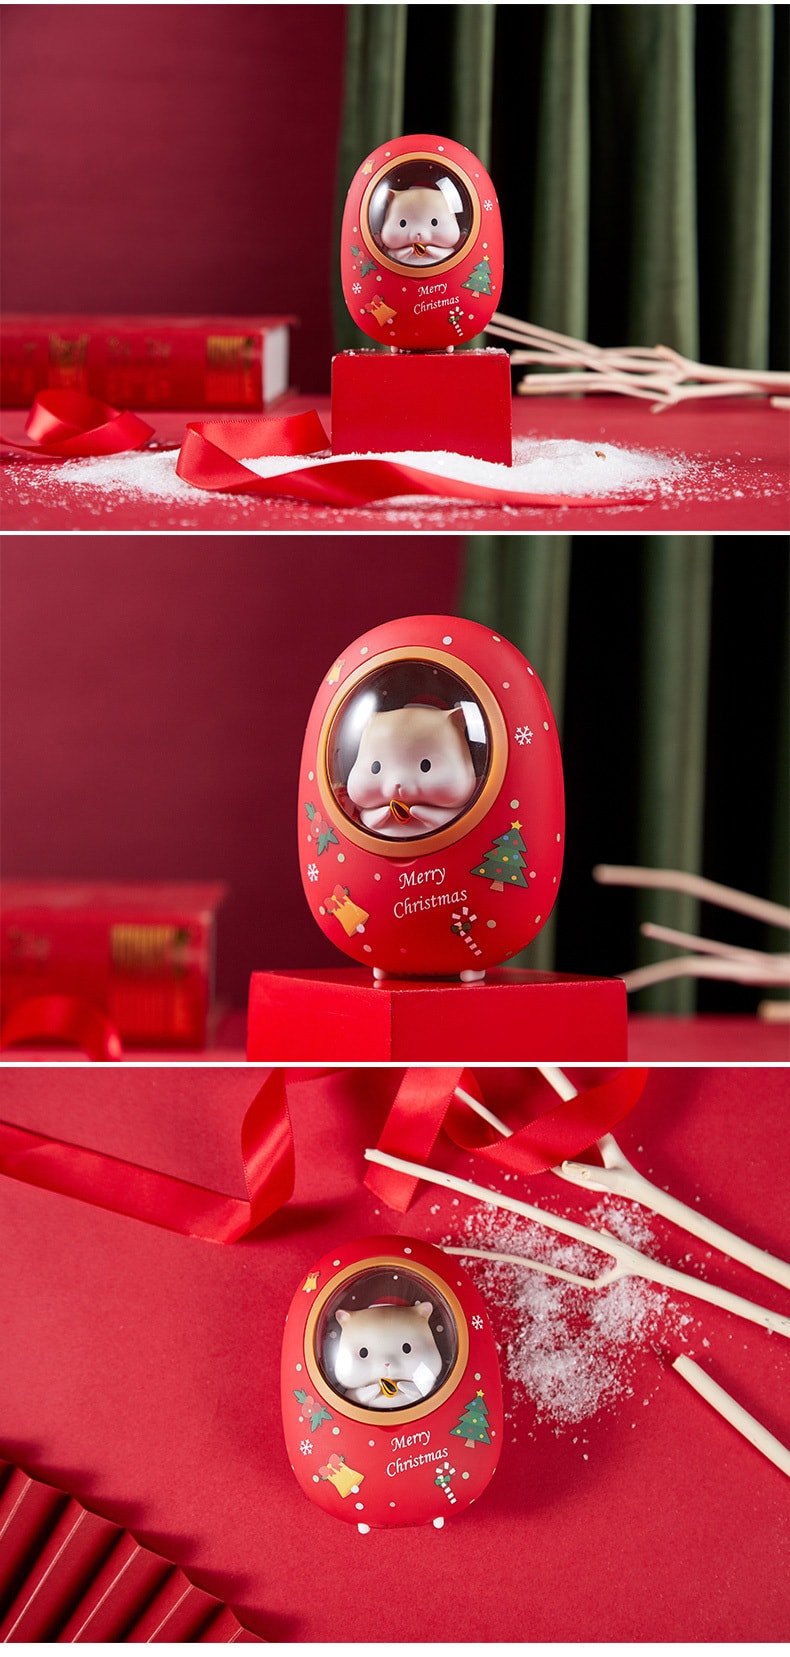 新年送礼【中国直邮】黄油猫   圣诞仓鼠暖手宝充电宝两用二合一 usb充电暖宝宝   圣诞礼盒款